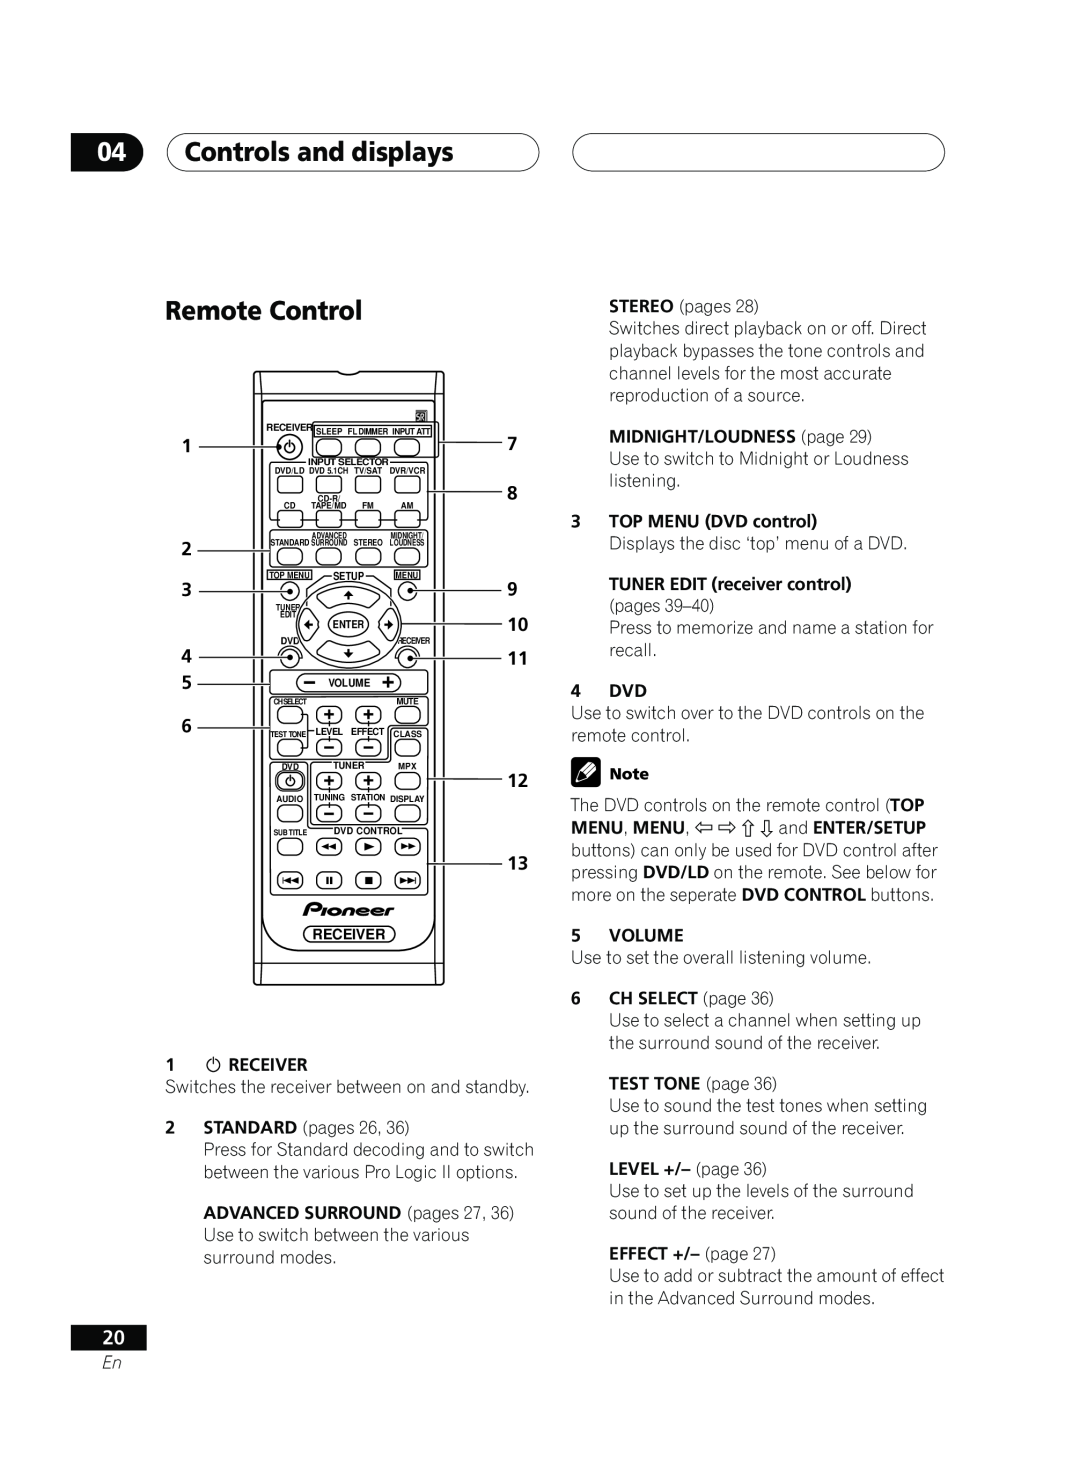 Pioneer D514, VSX-D414 manual 04Controls and displays Remote Control 